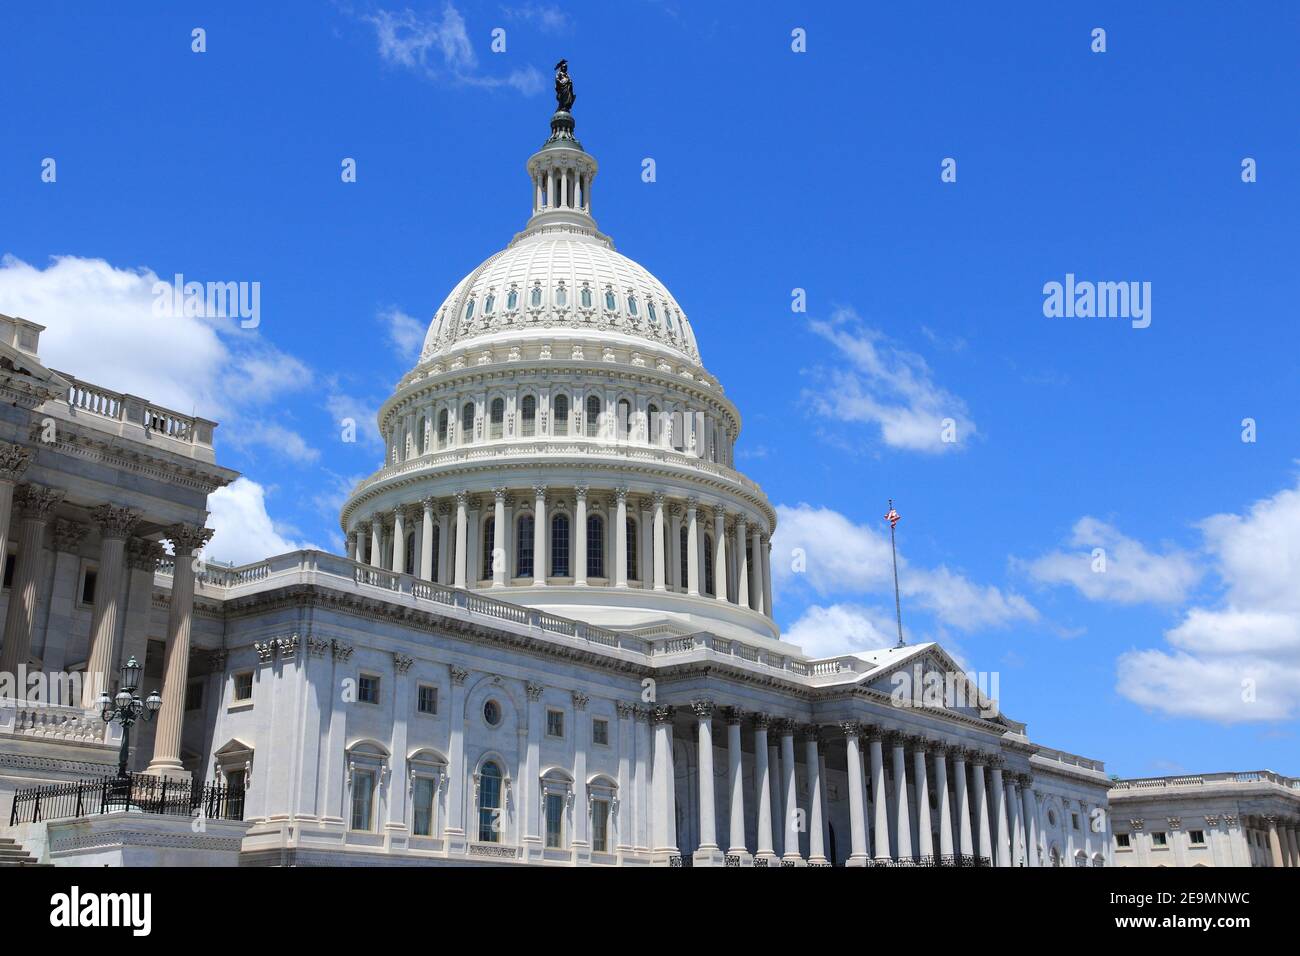 Capitole NATIONAL DES ÉTATS-UNIS. Point de repère à Washington, DC. Capitole des États-Unis. Banque D'Images